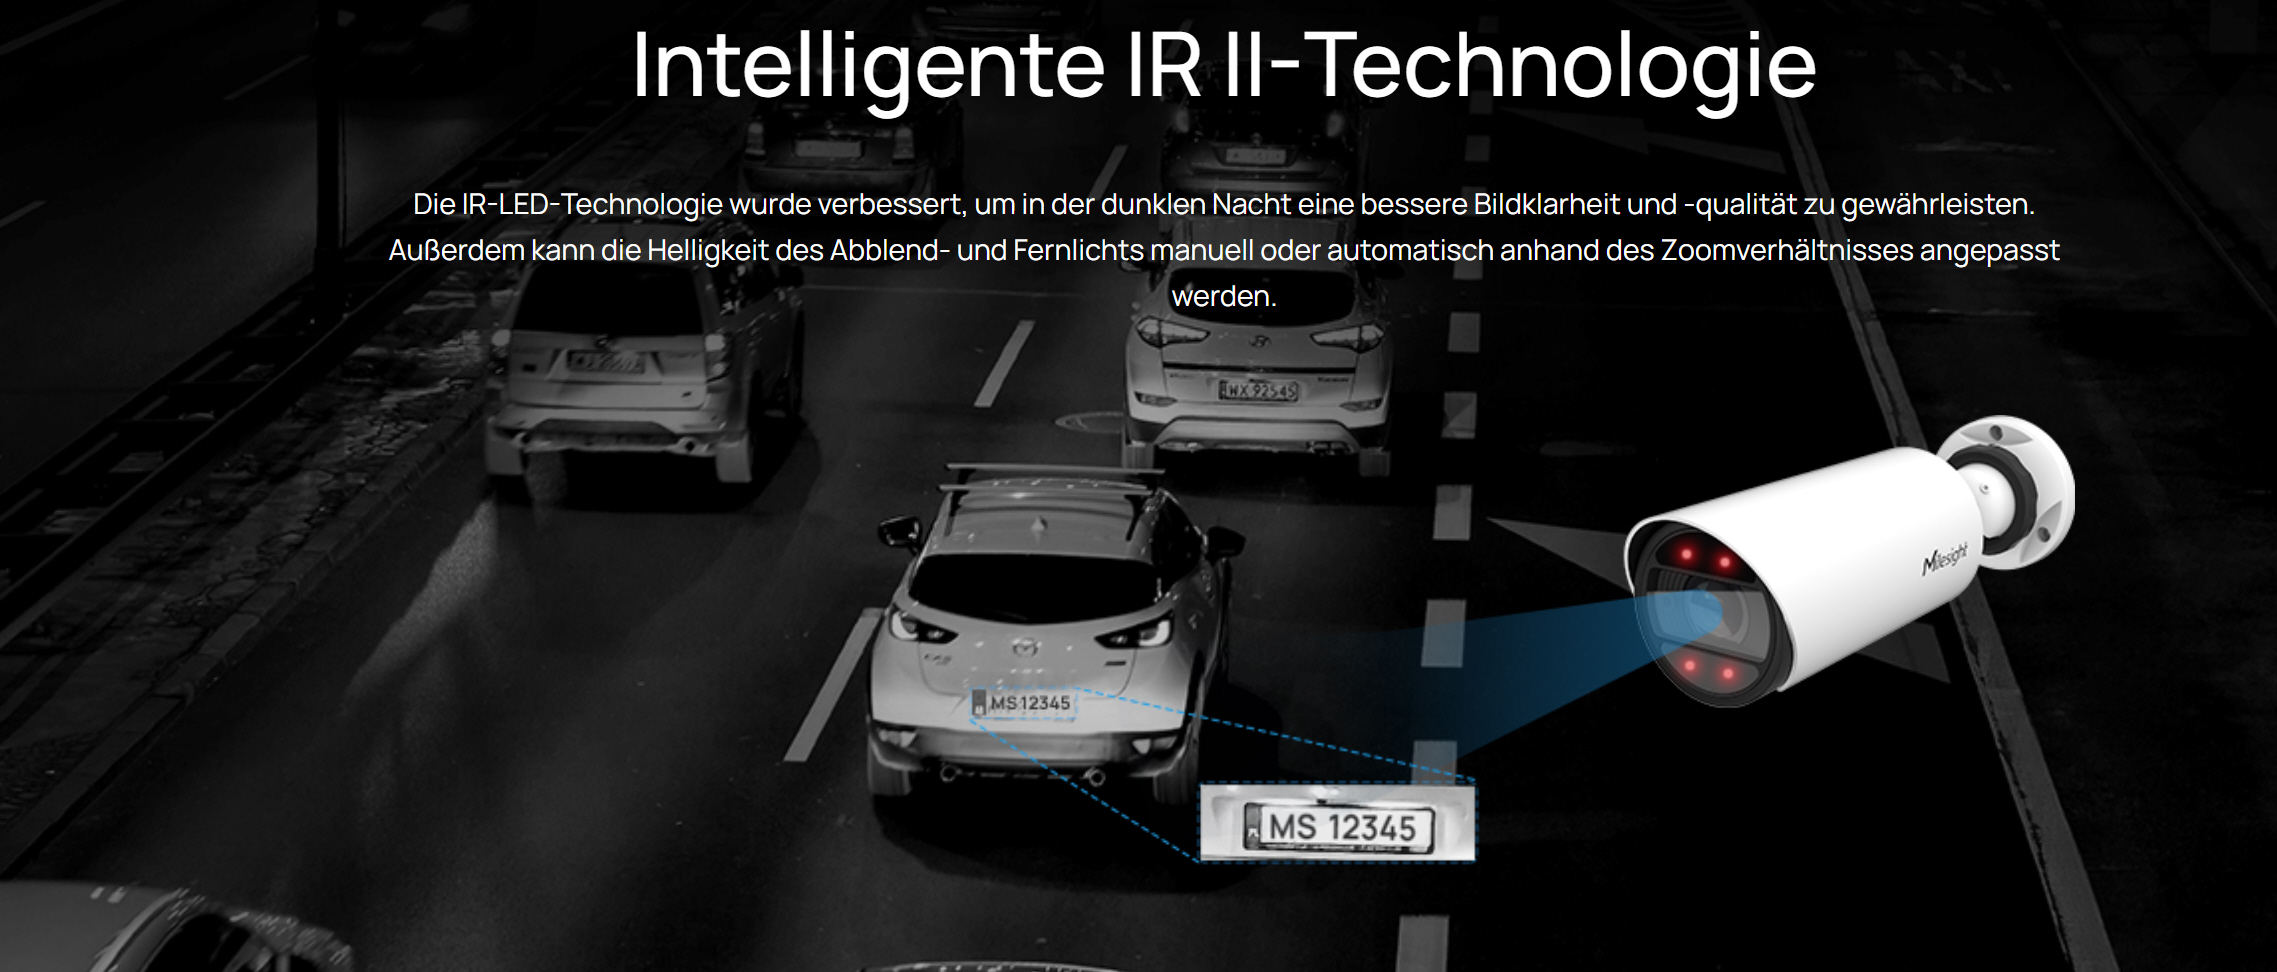 Intelligente IR II-Technologie